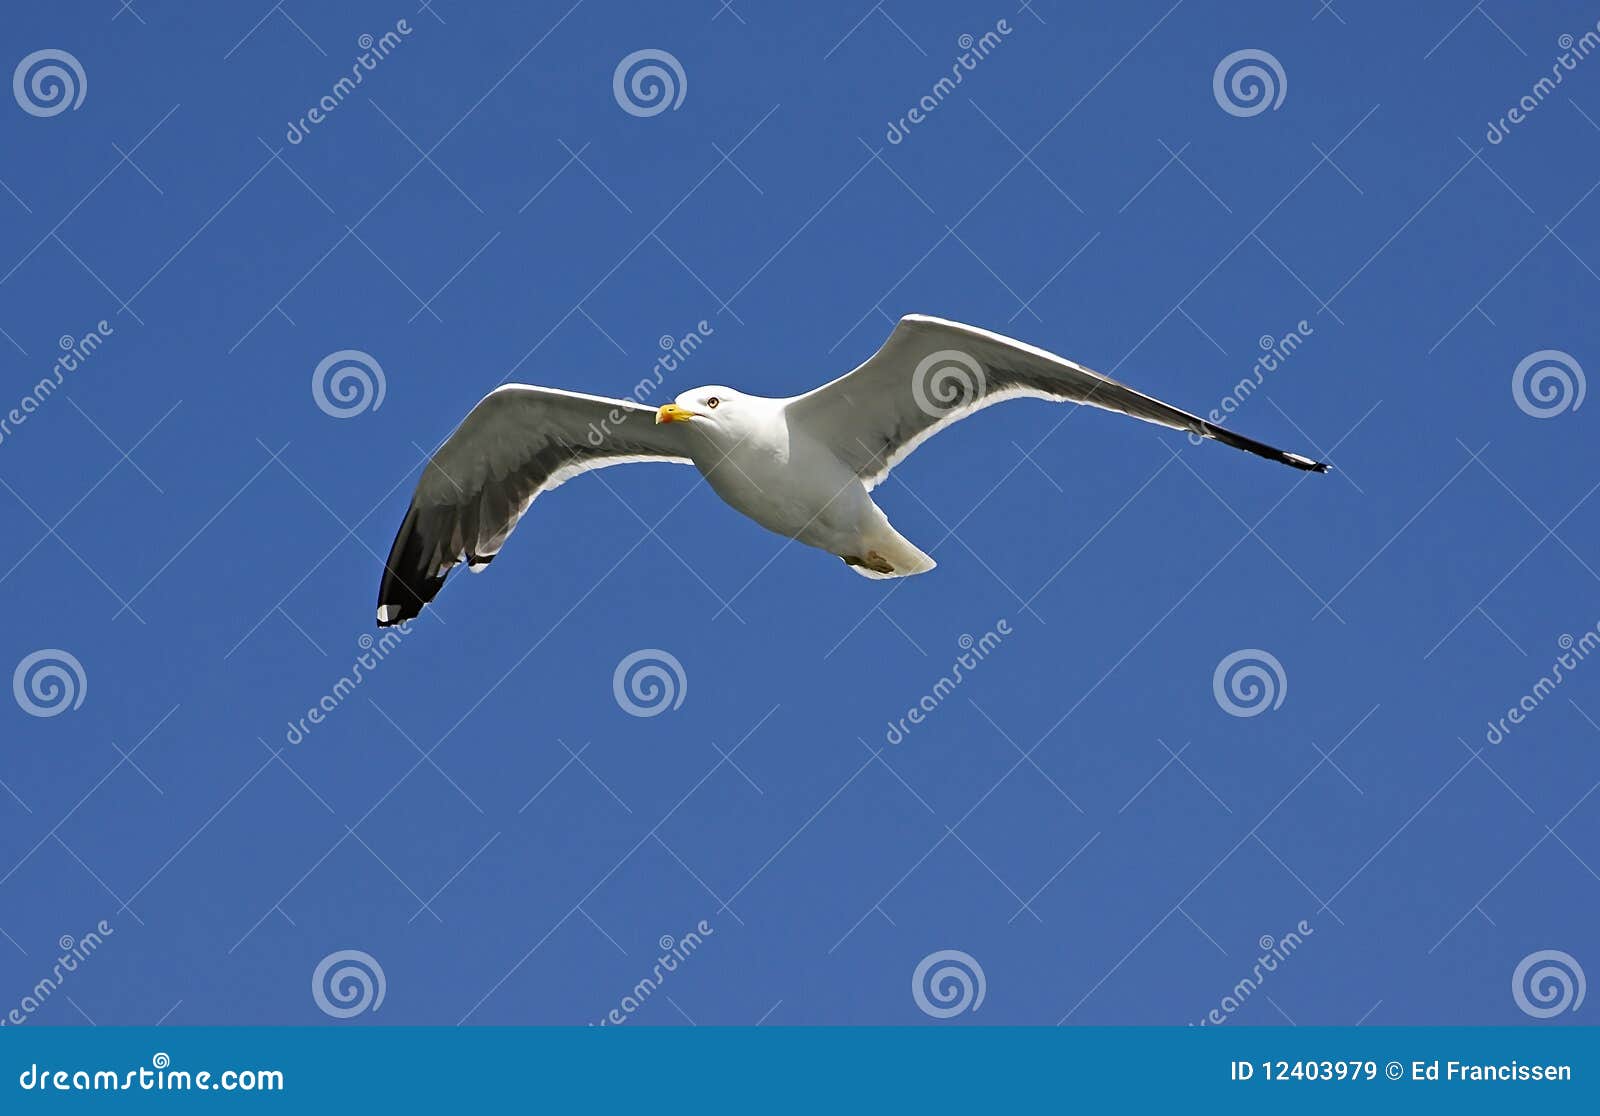 a seagull